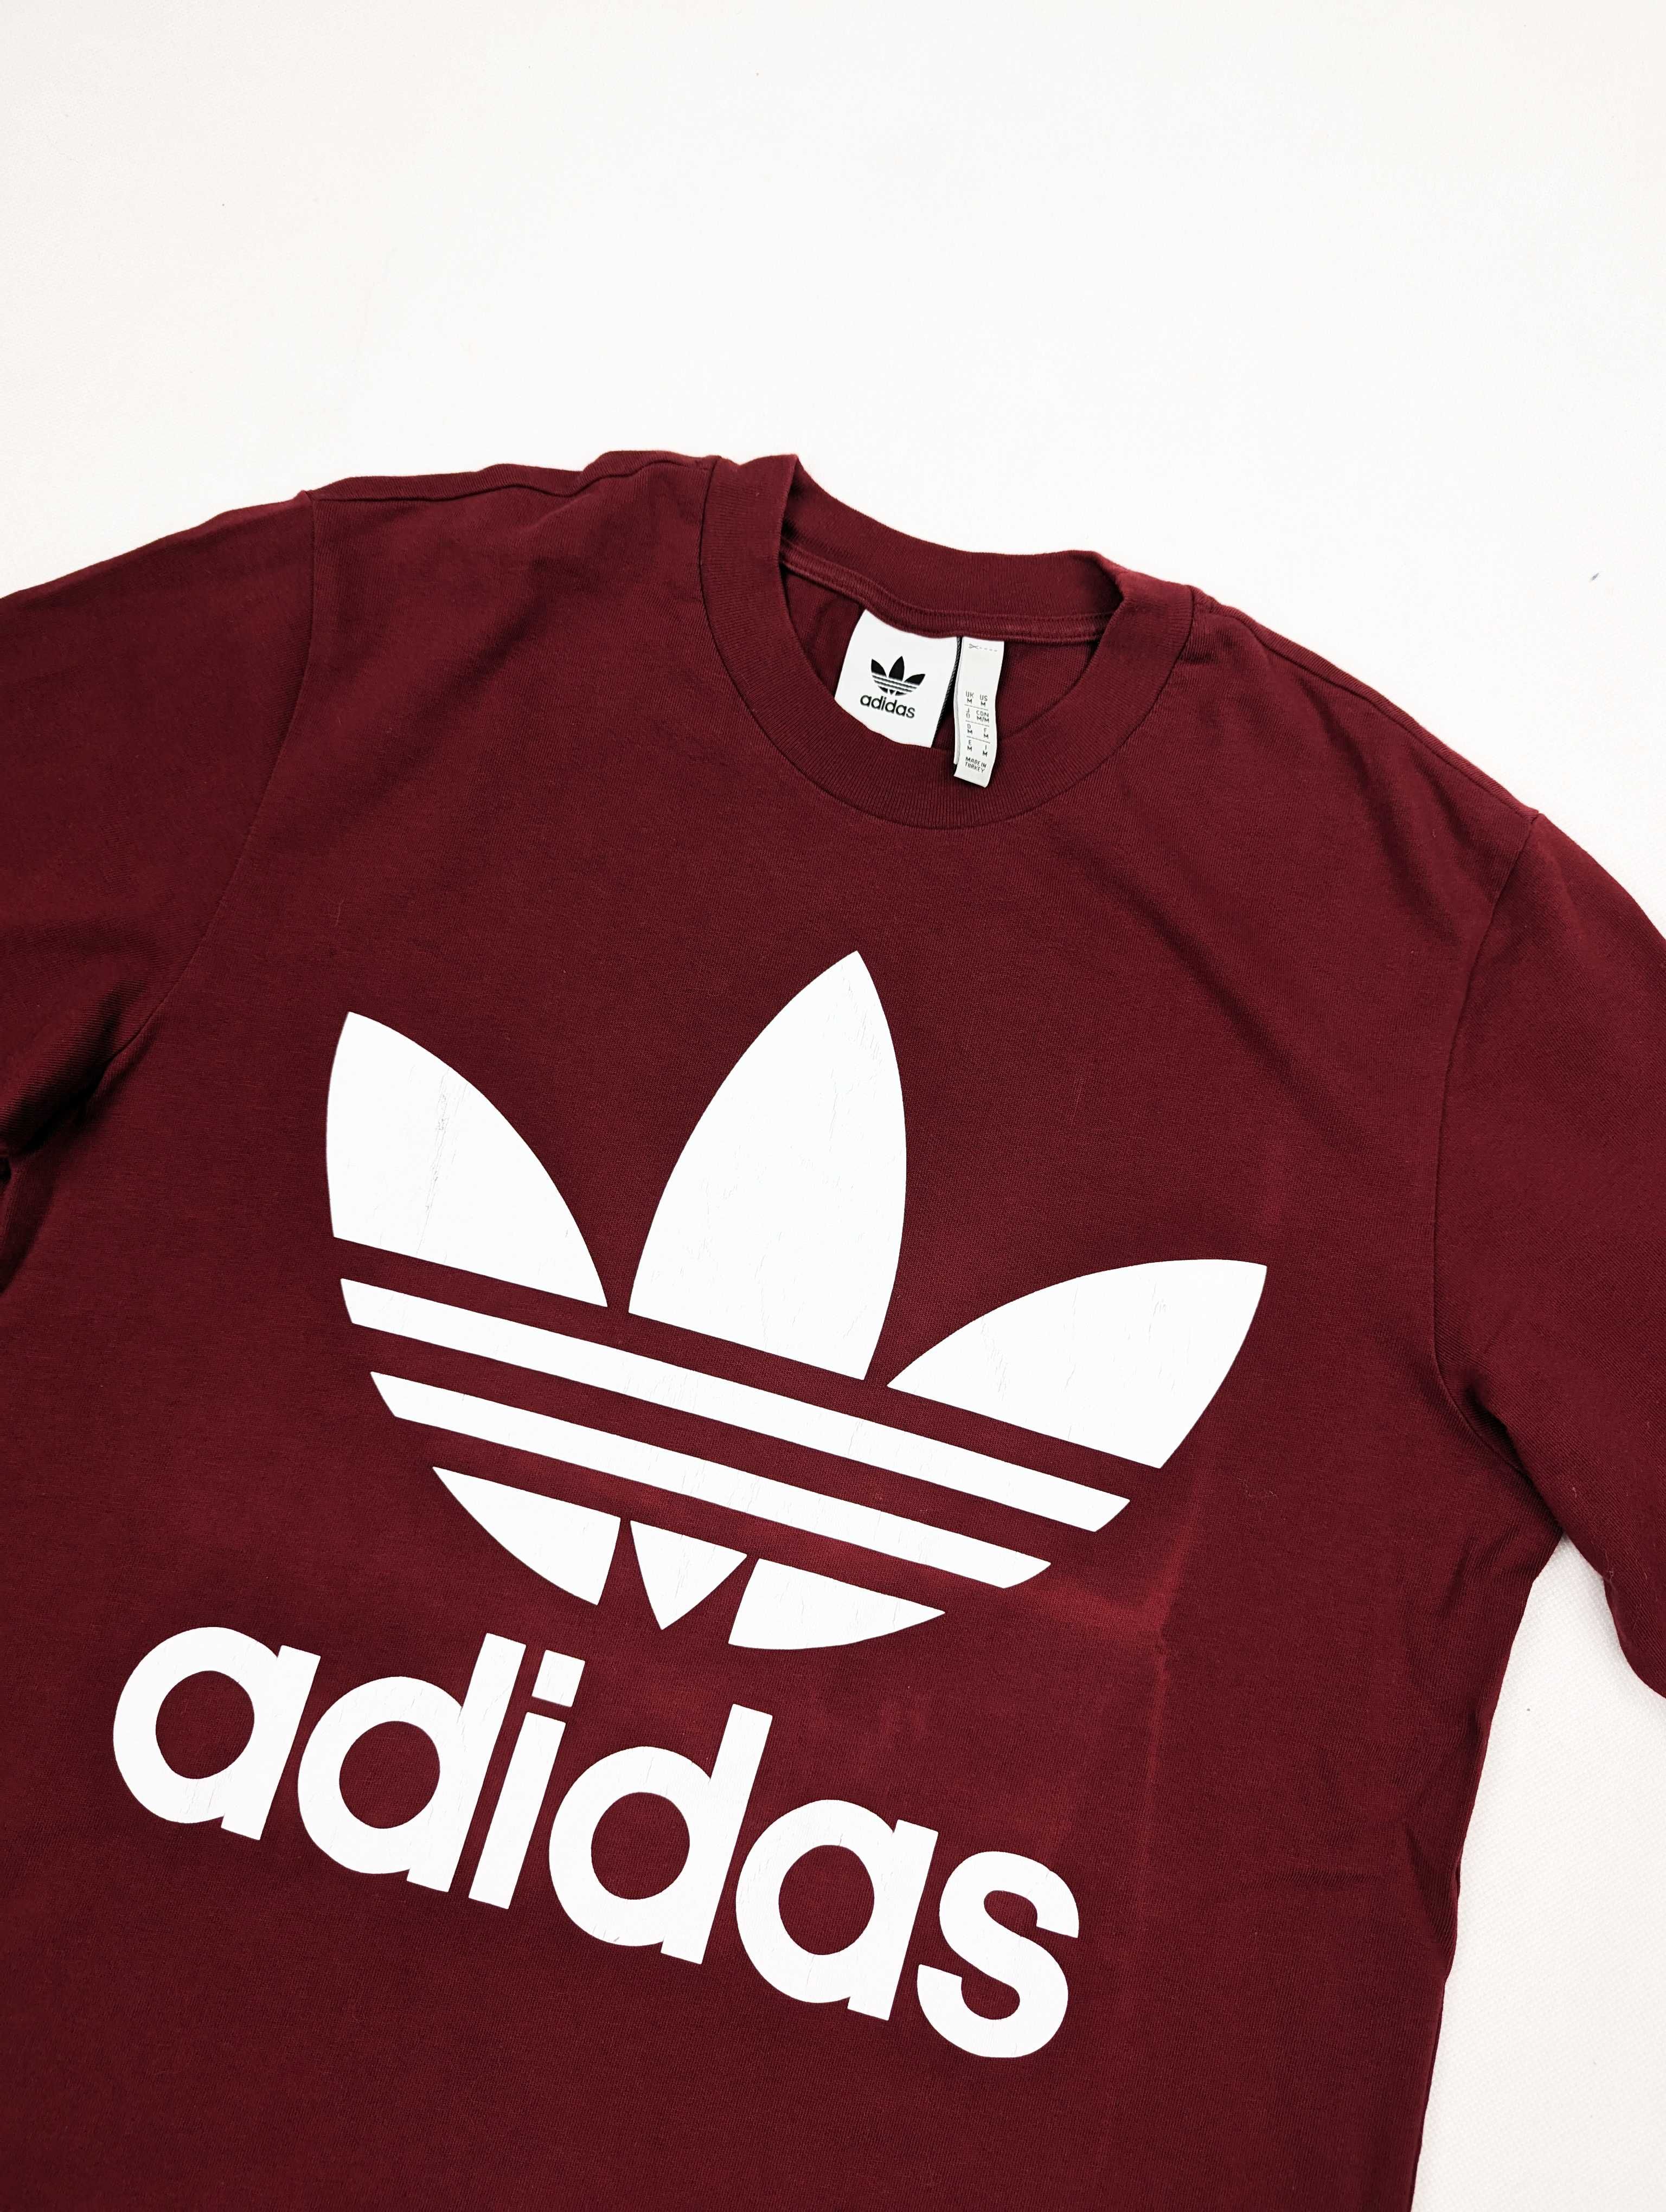 Adidas bordowa koszulka t-shirt M logo